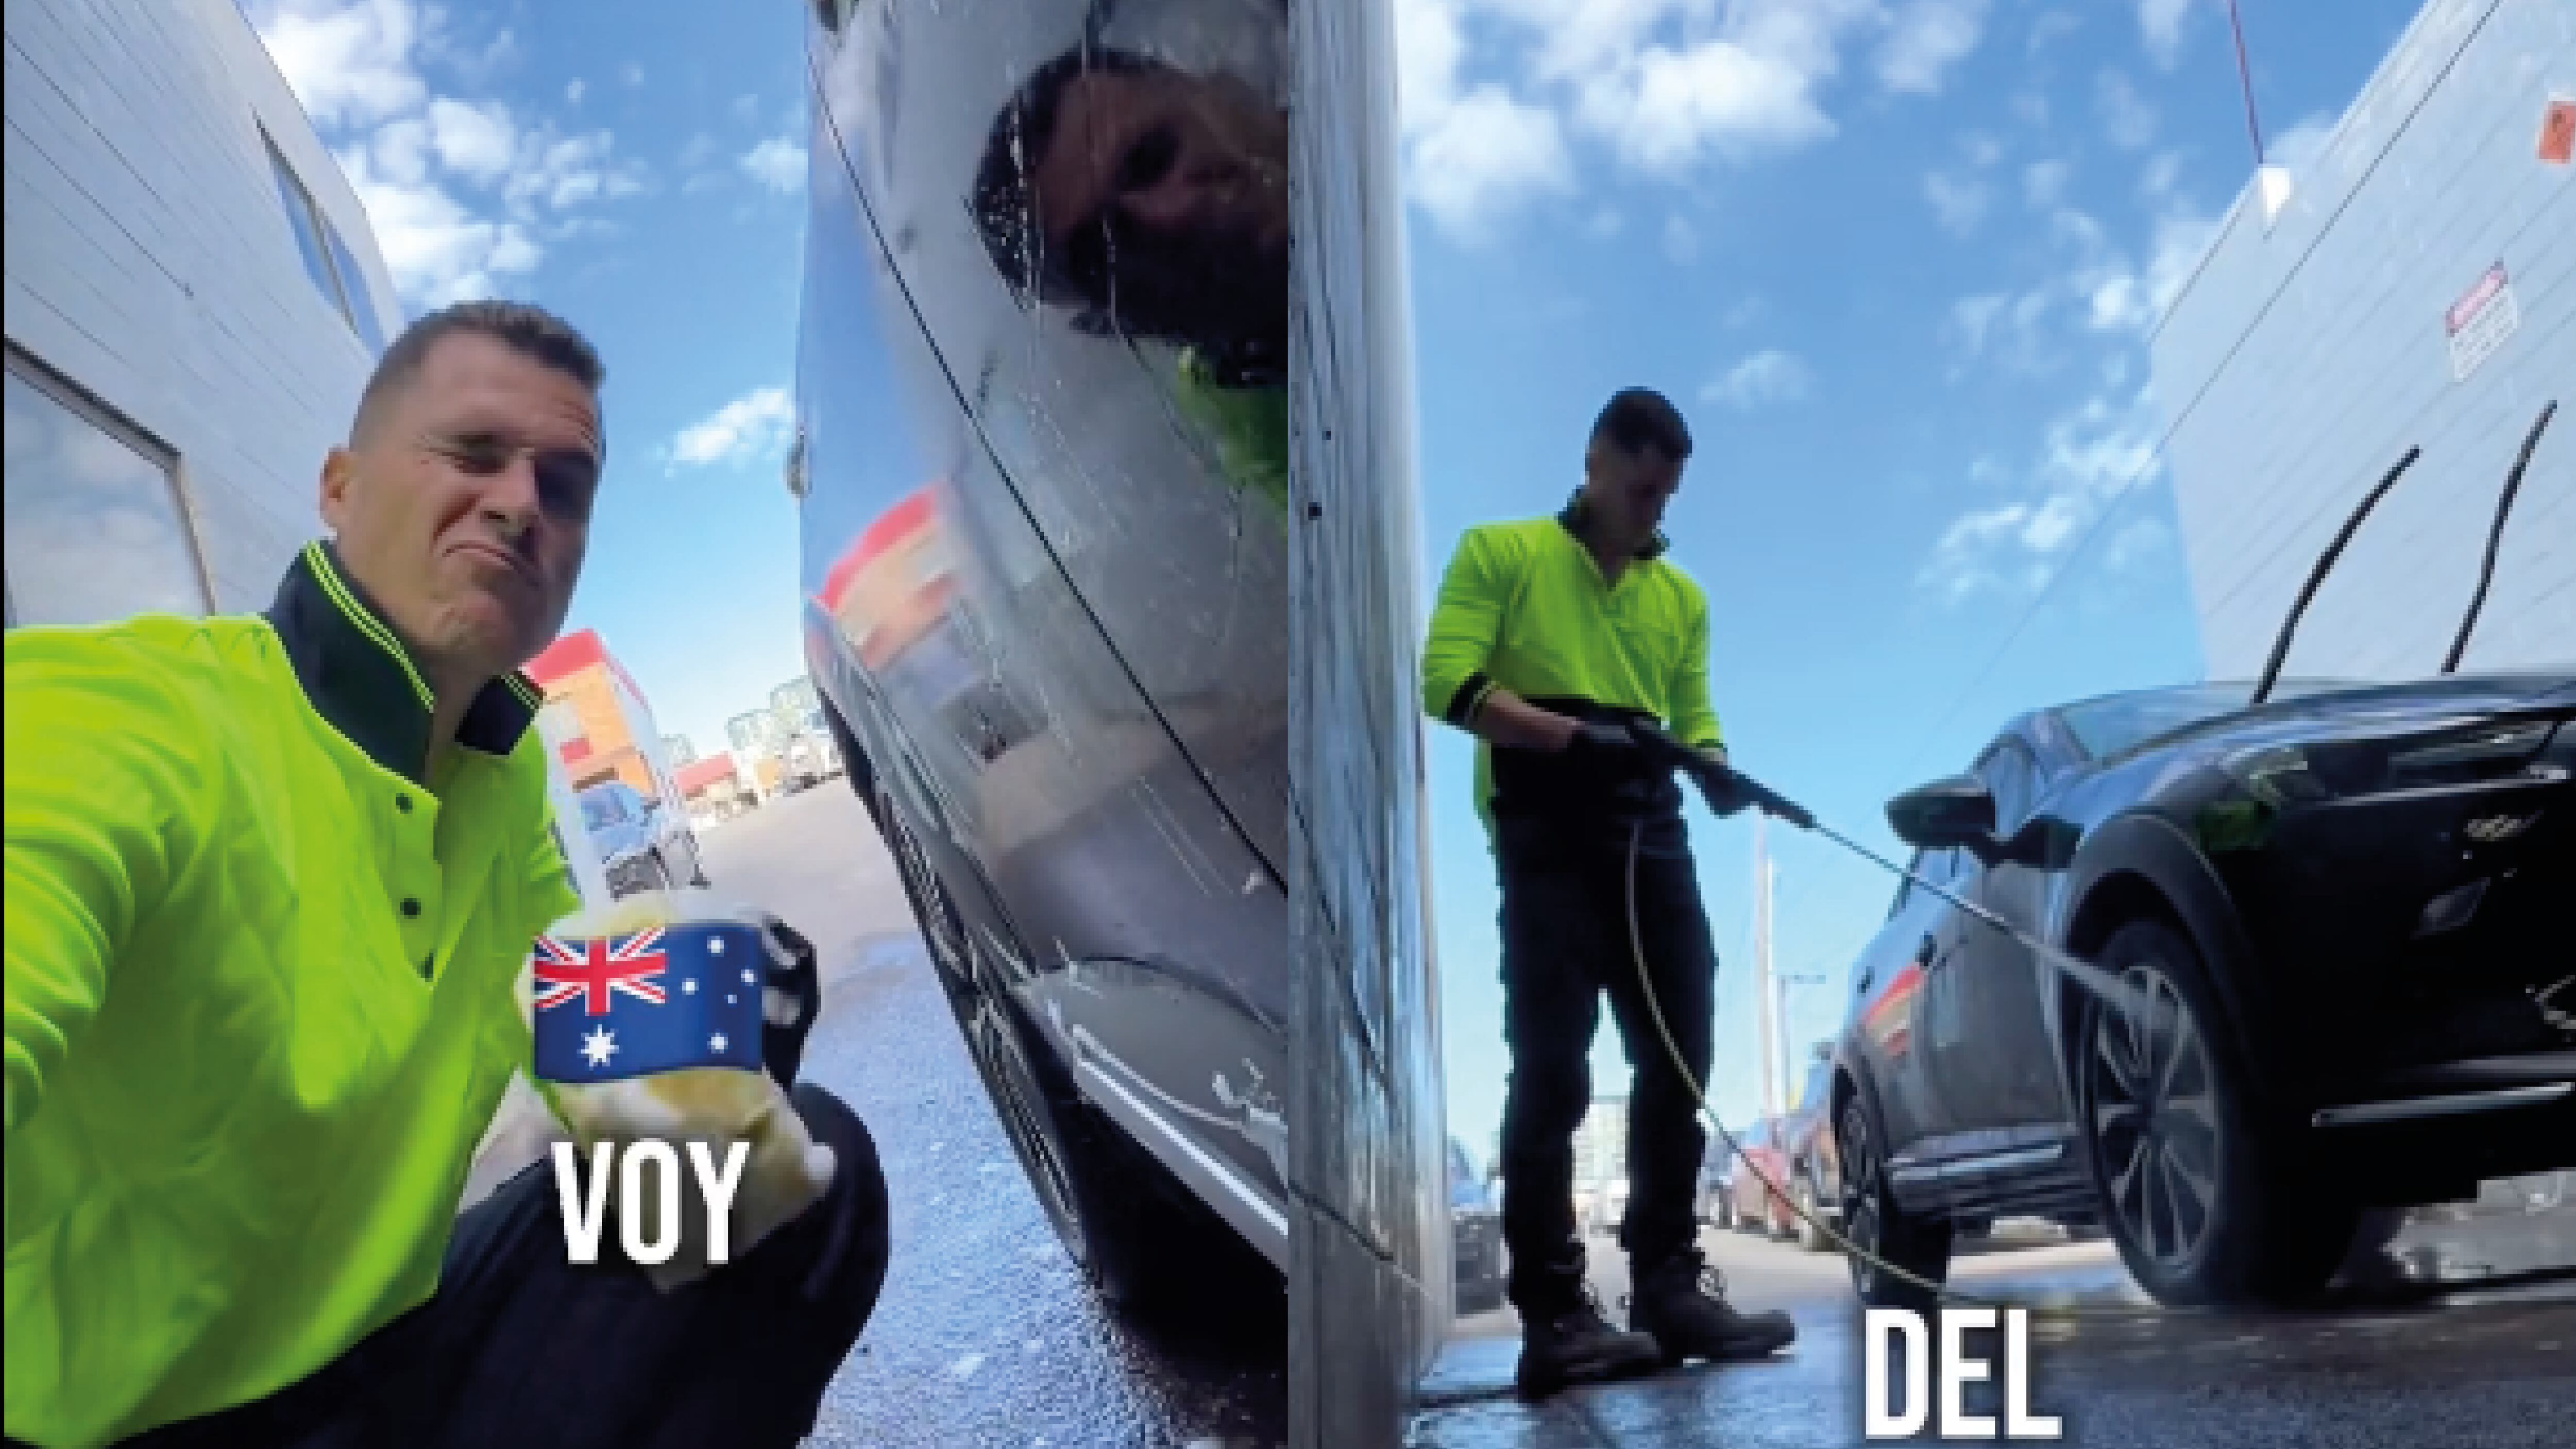 La exuberante cifra que gana un joven lavando autos en Australia